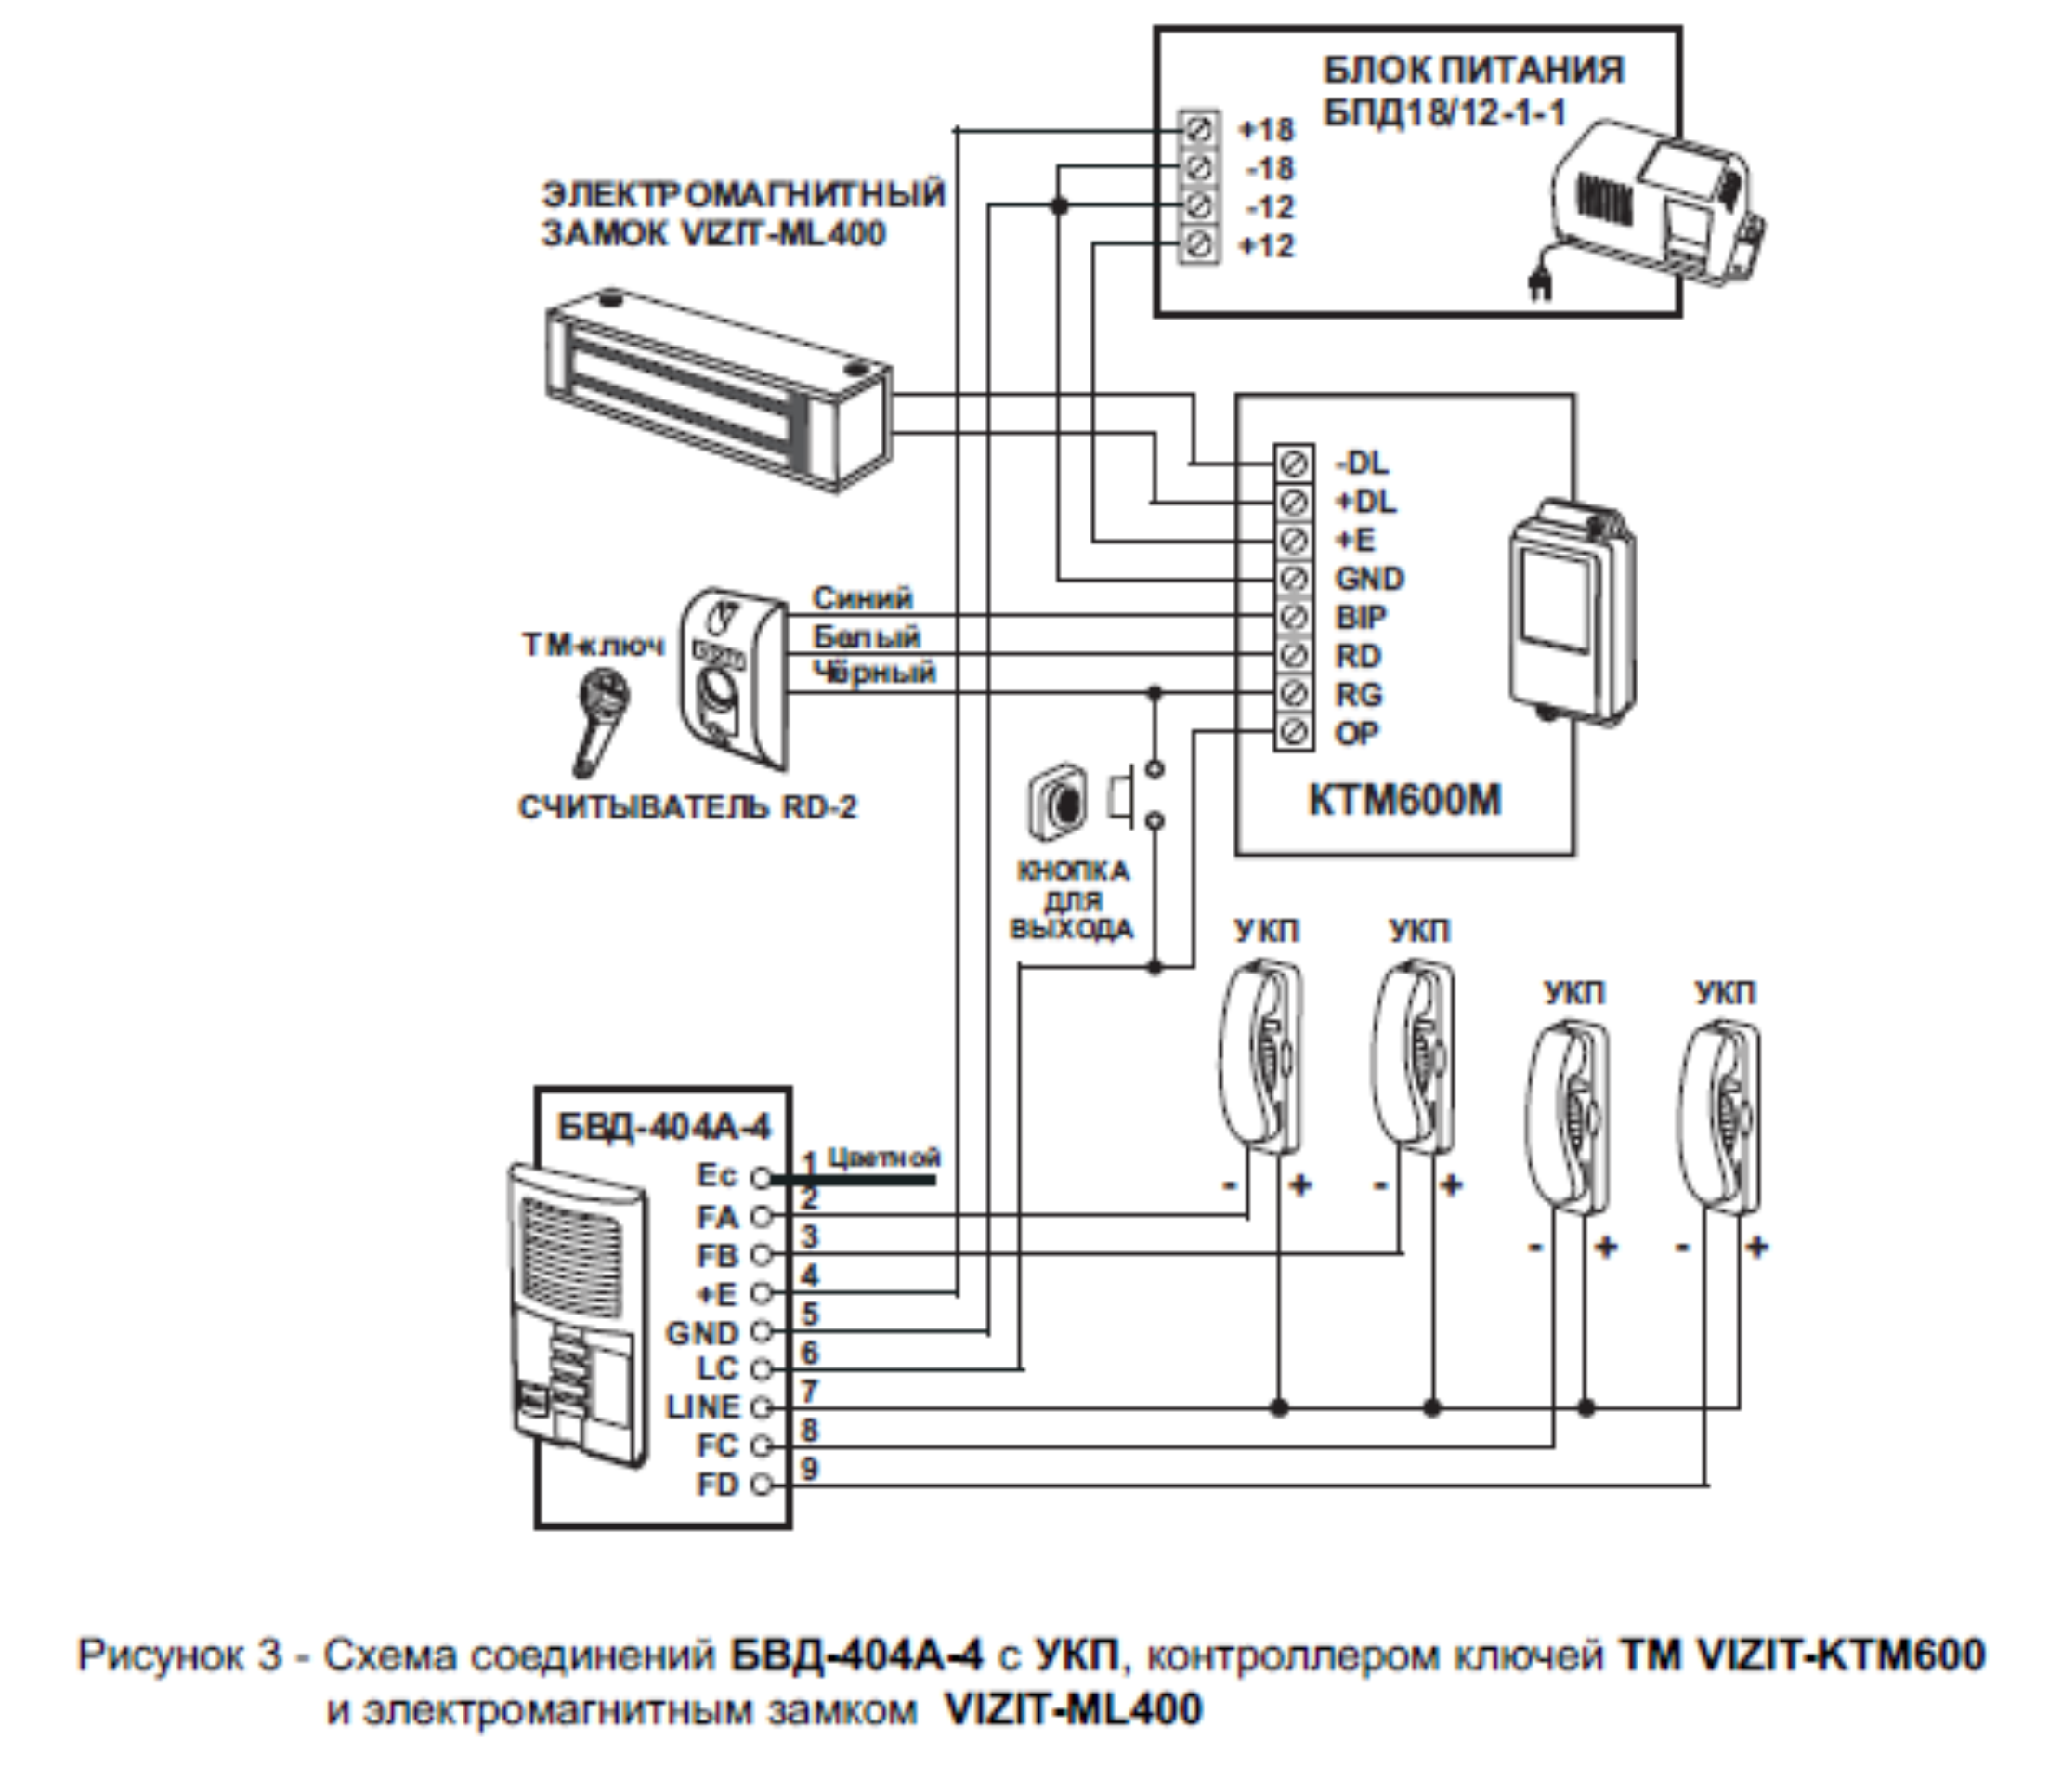 Рисунок 3 - Схема соединений БВД-404А-4 с УКП, контроллером ключей ТМ VIZIT-KTM600 и электромагнитным замком VIZIT-ML400